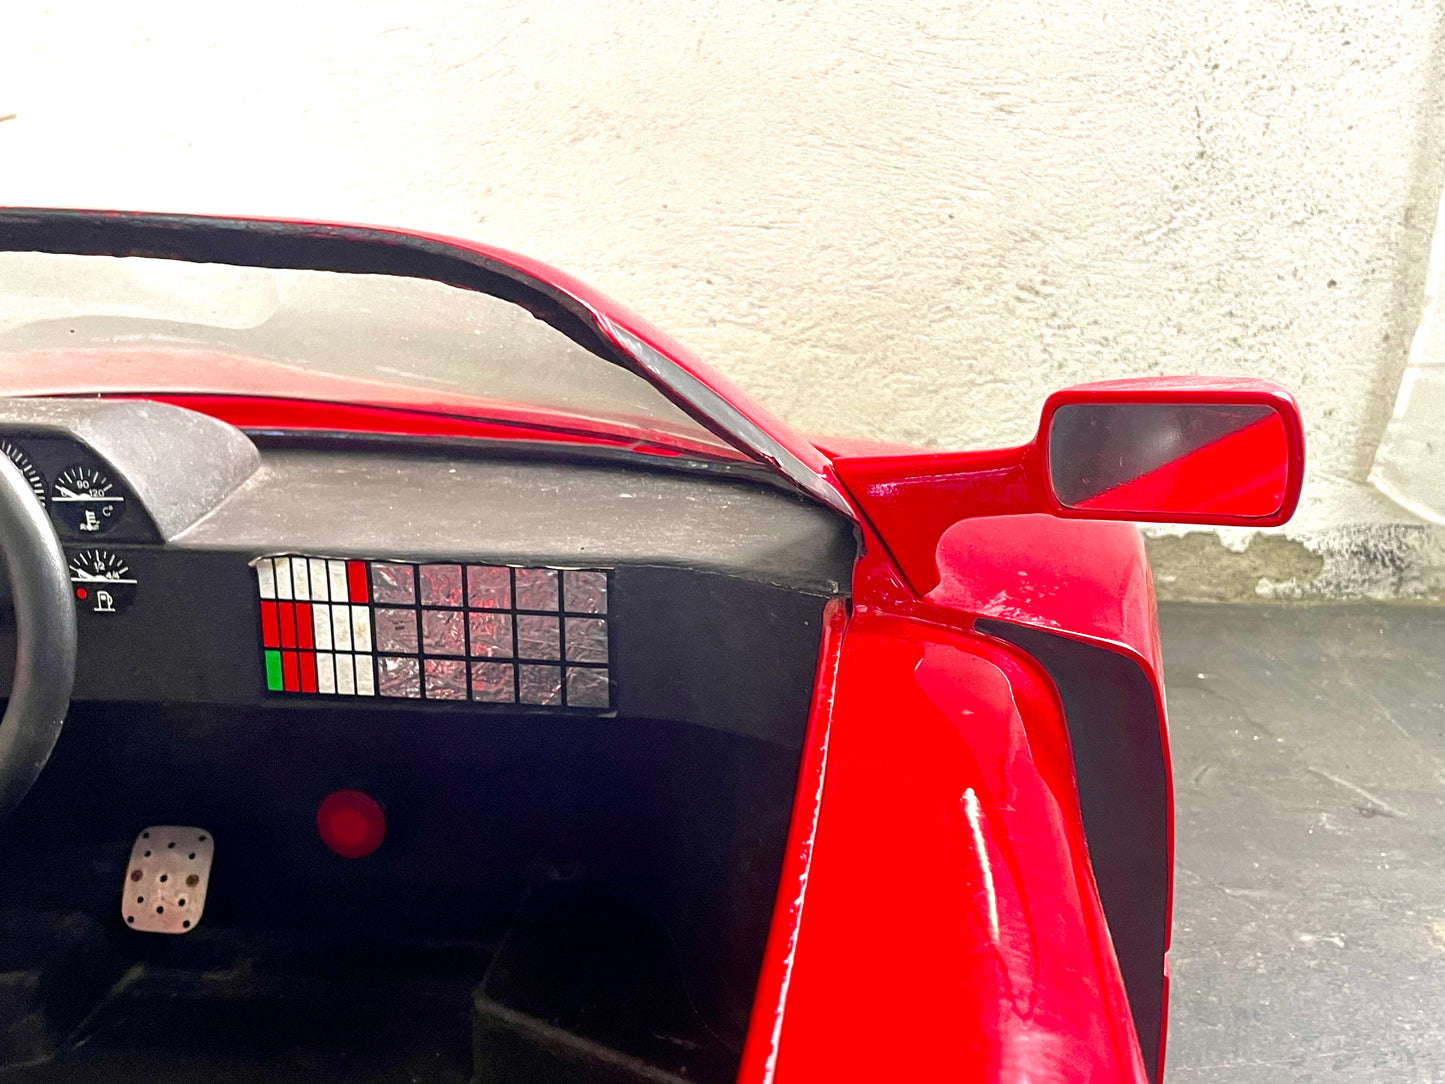 Giordani Ferrari F40-Style Electric Go-Kart